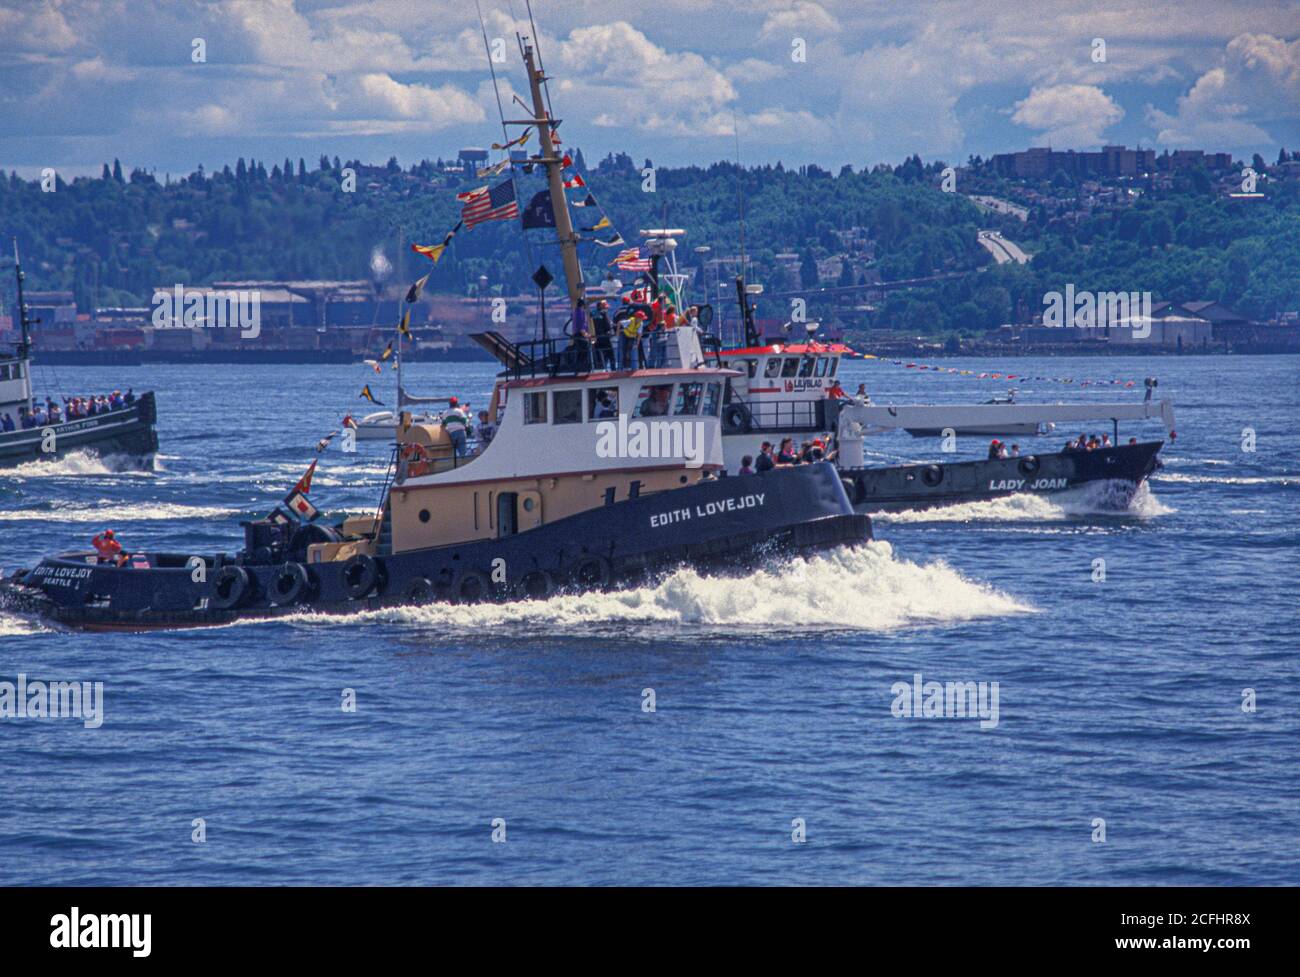 Tugboat races on Puget Sound during Maritime Week, Seattle, Washington USA Stock Photo